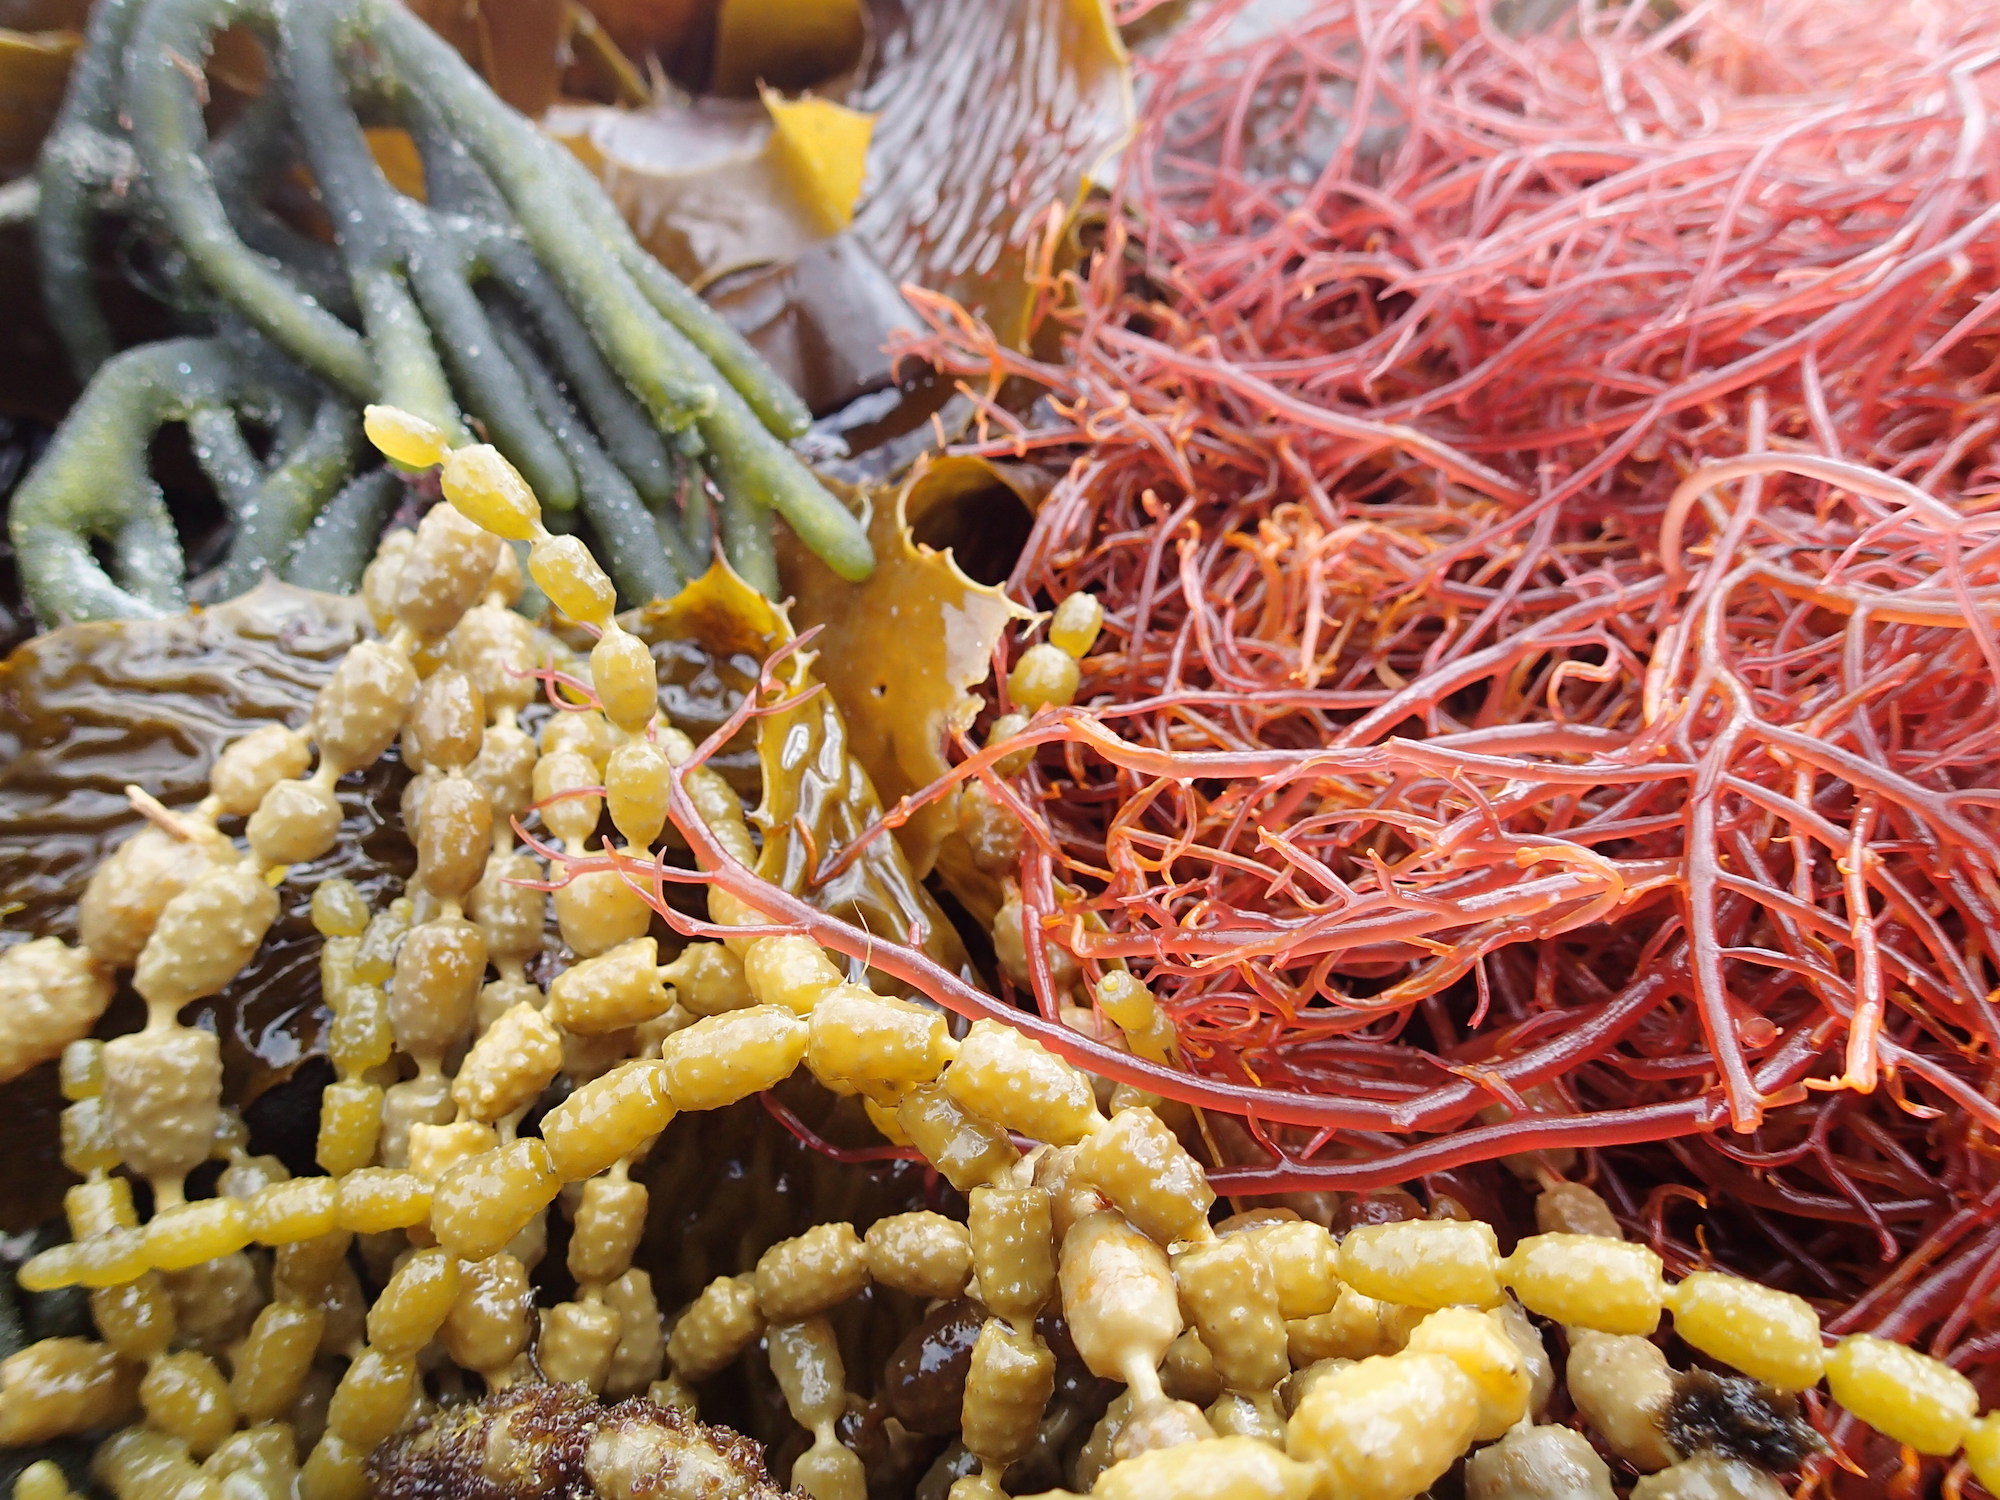 Pictured: Various seaweed varieties.